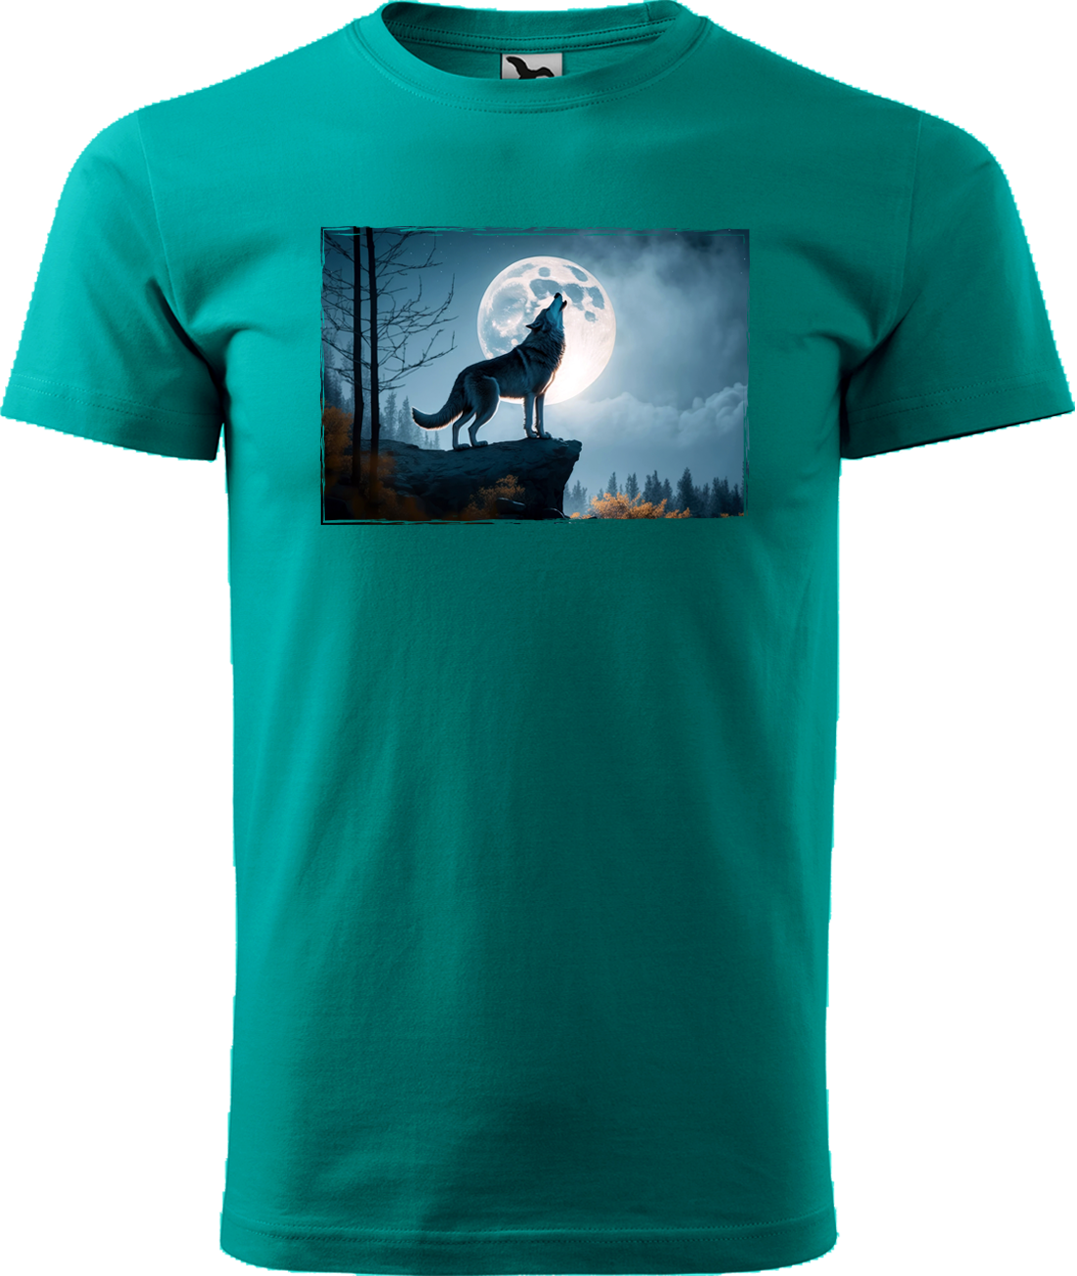 Pánské tričko s vlkem - Vyjící vlk Velikost: M, Barva: Emerald (19)